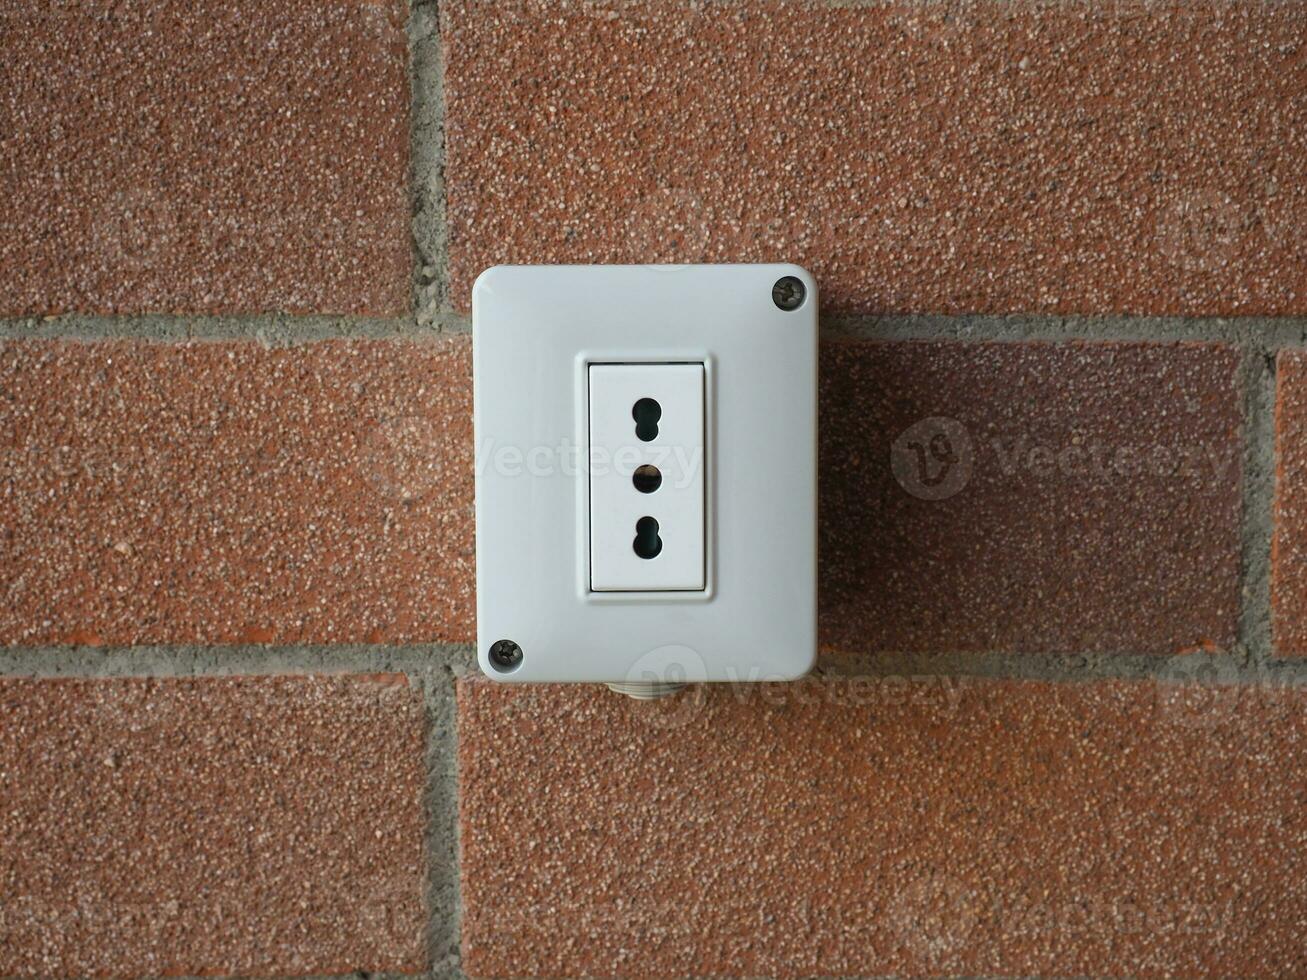 wall power socket photo